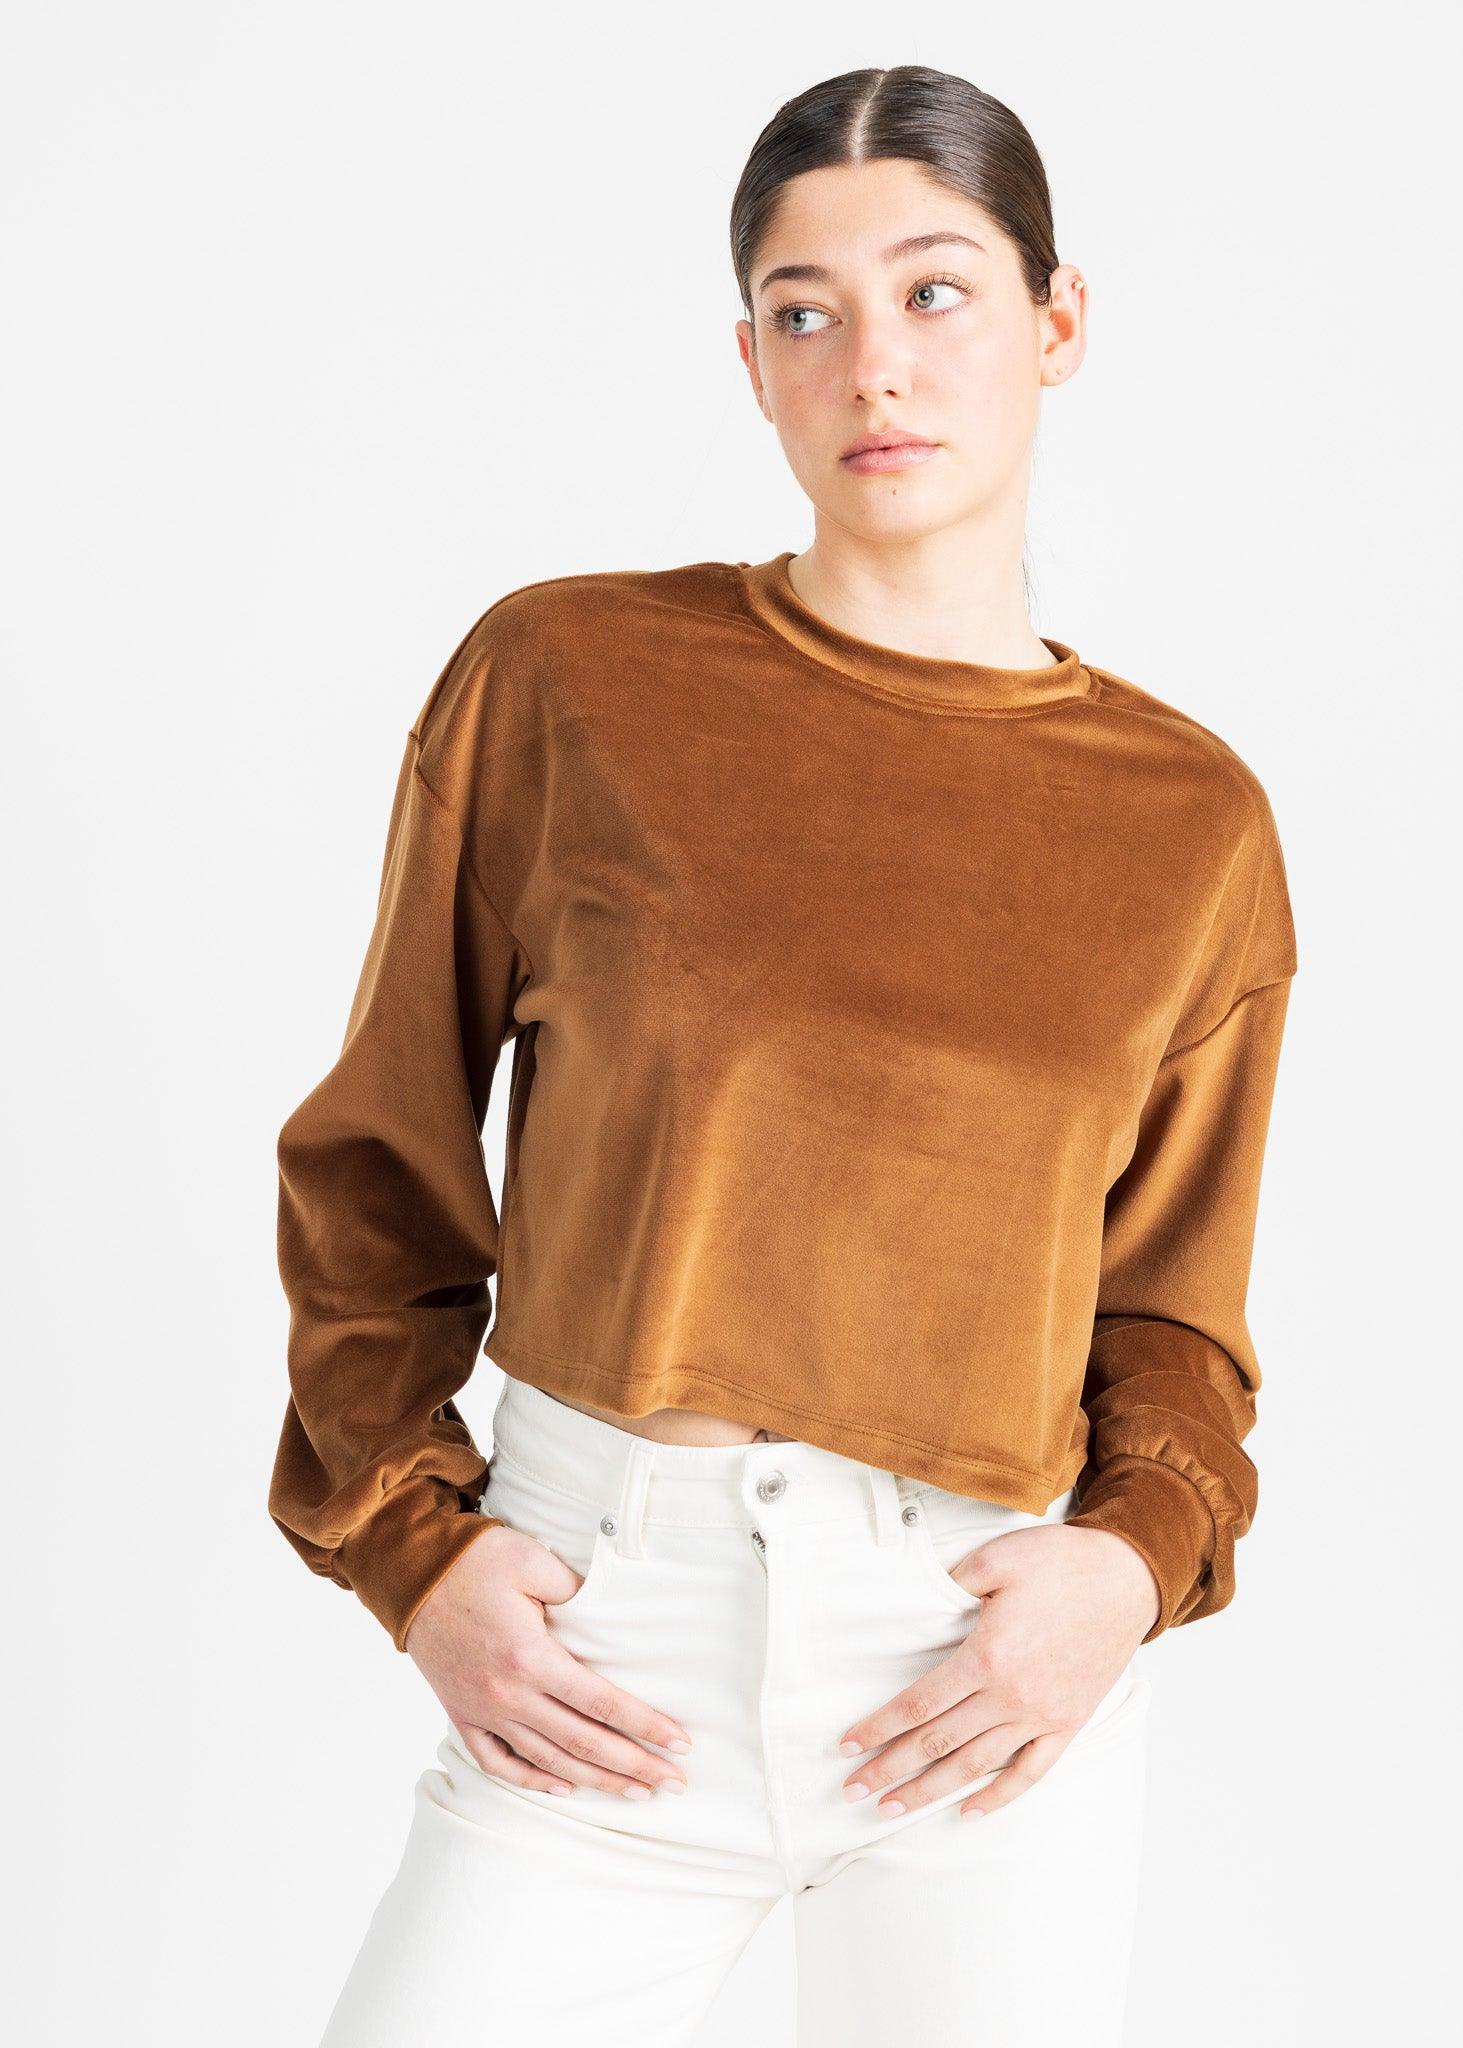 GIBSON velvet sweater - Yana K